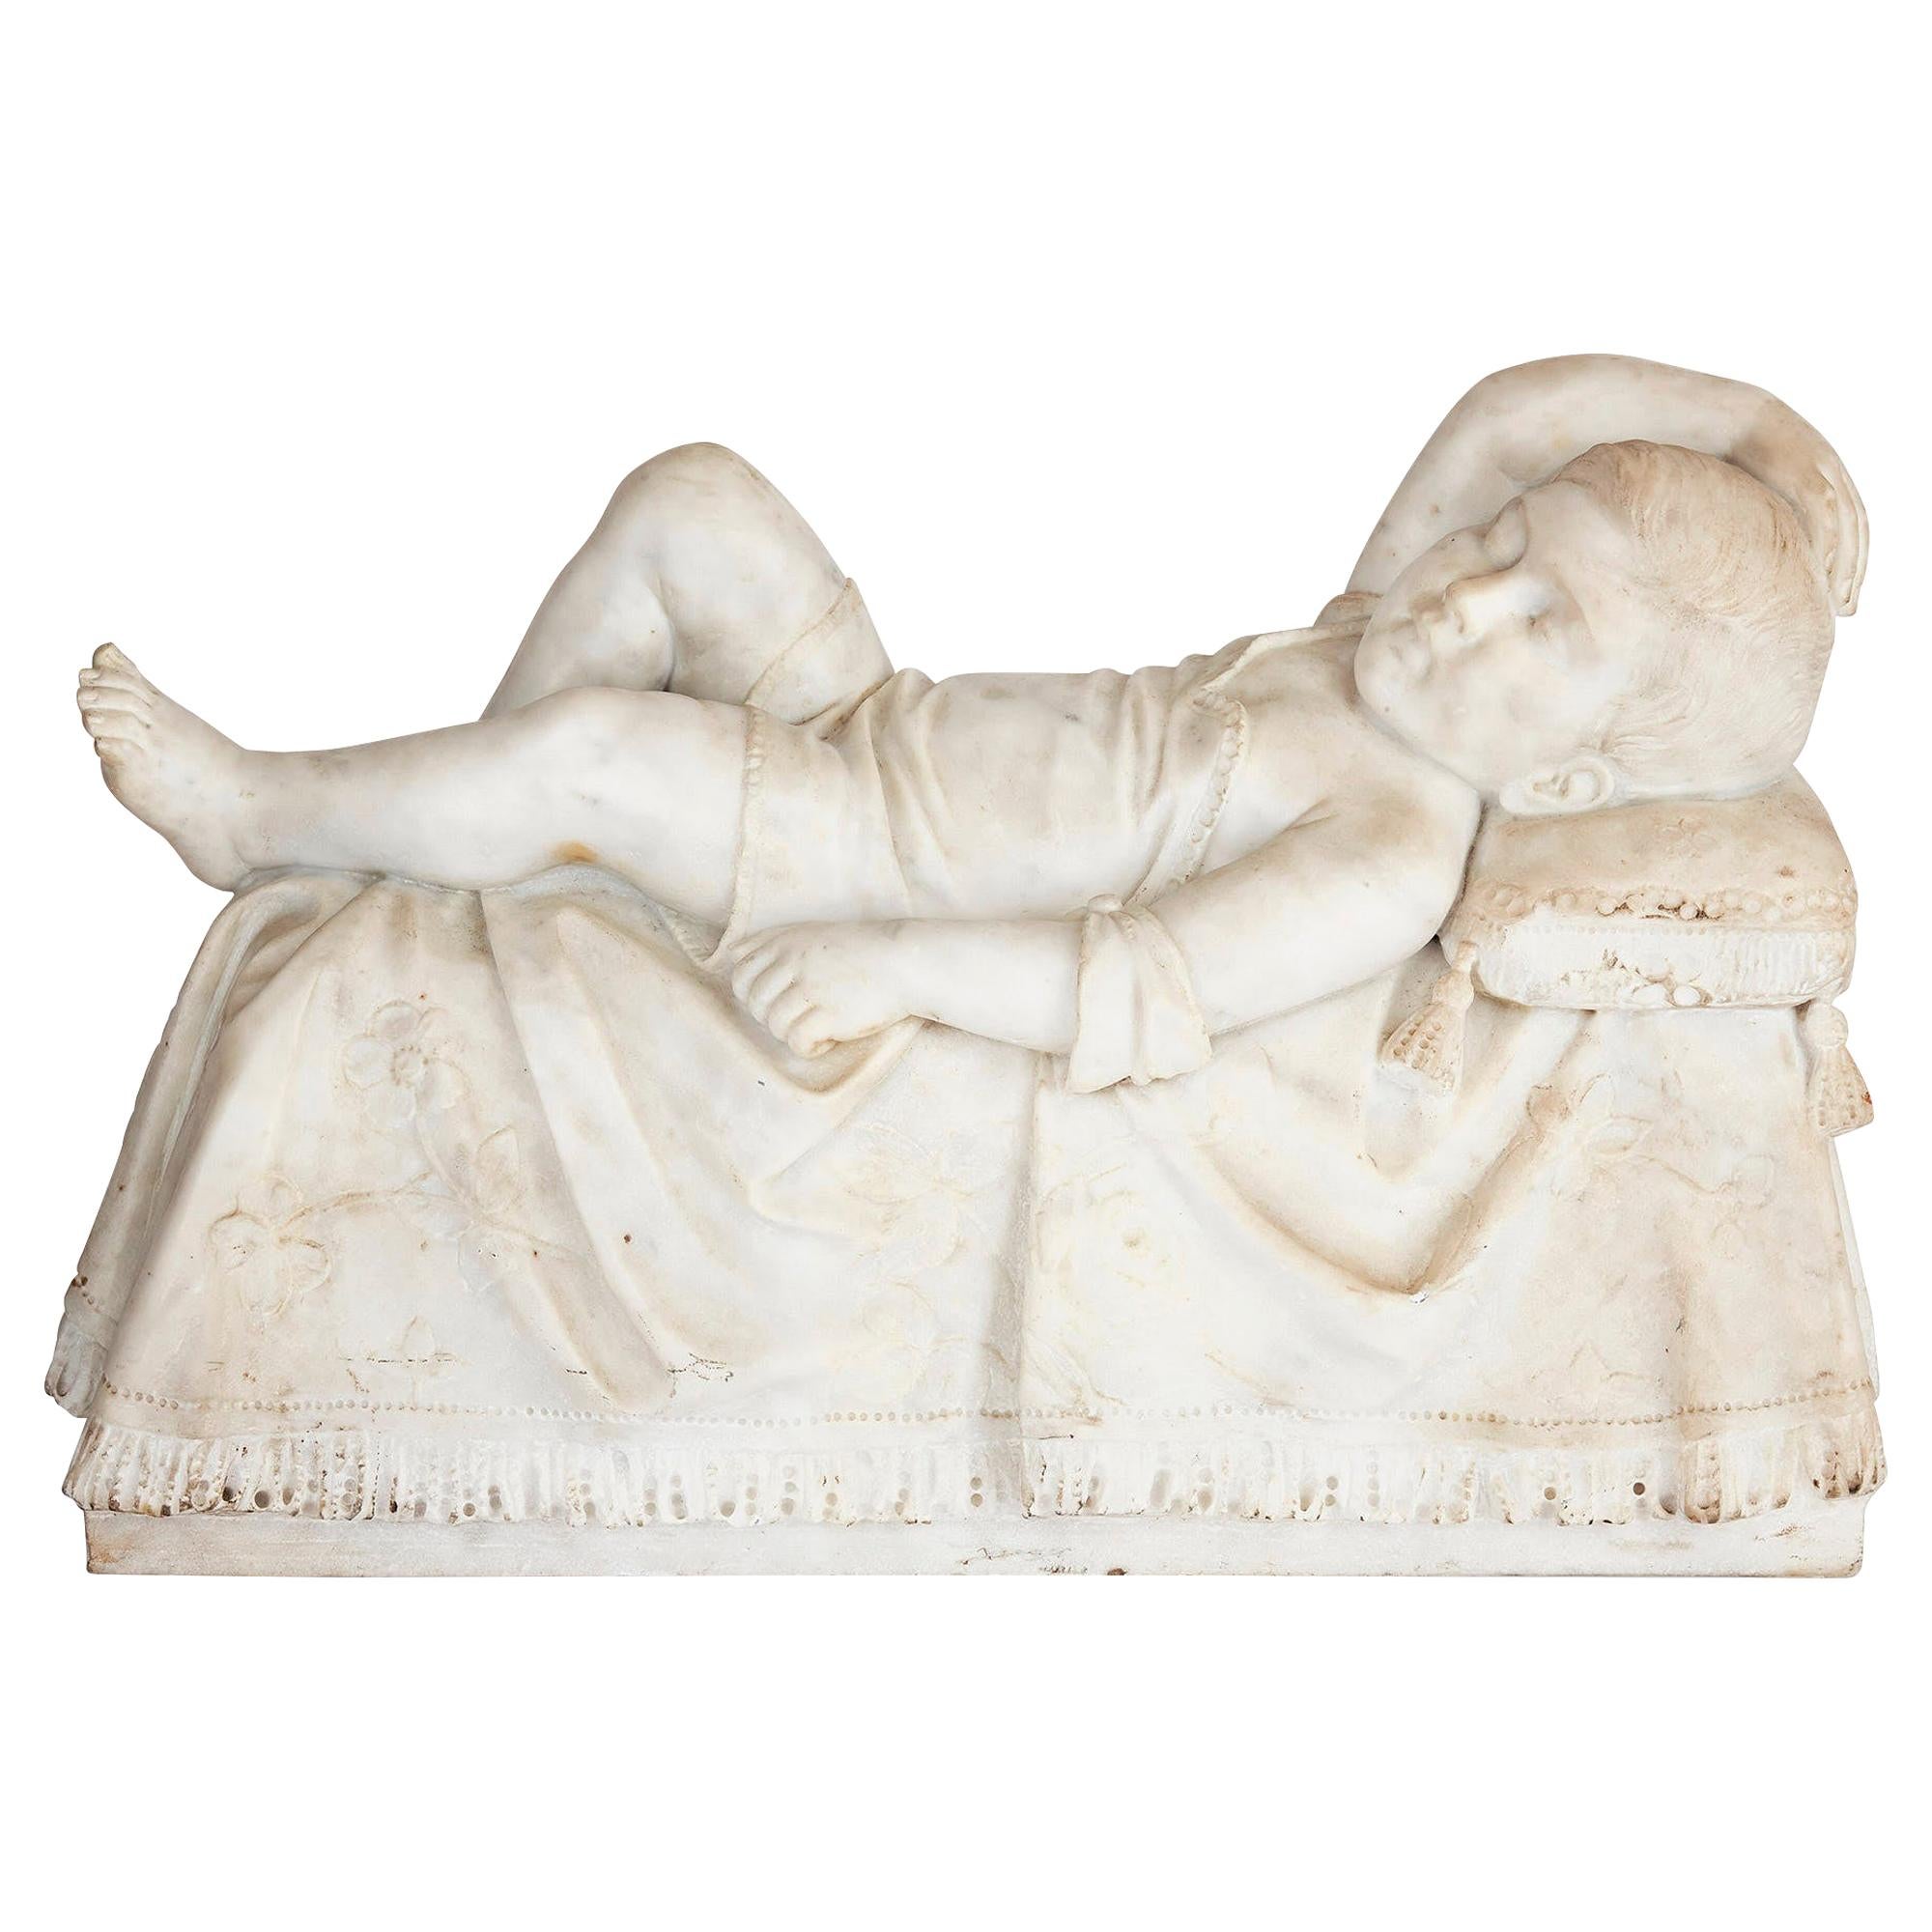 Sculpture italienne ancienne du 19ème siècle d'un enfant endormi